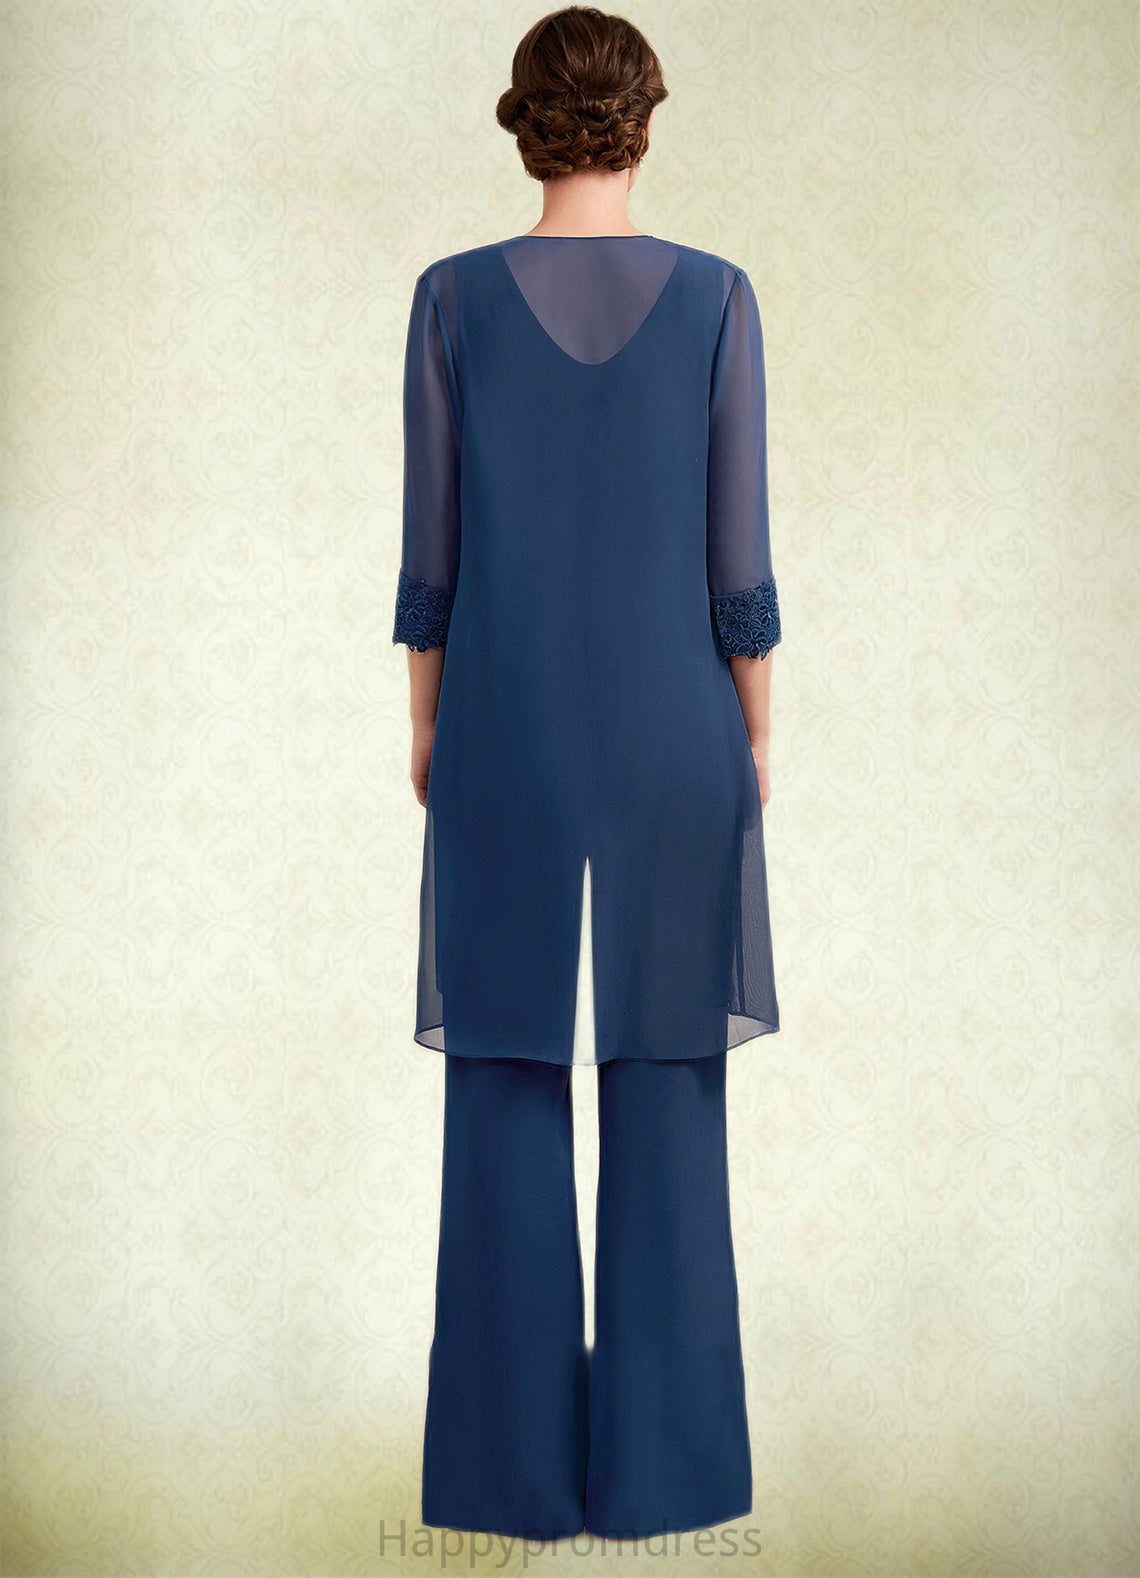 London Jumpsuit/Pantsuit Scoop Neck Floor-Length Chiffon Mother of the Bride Dress With Lace XXS126P0014687